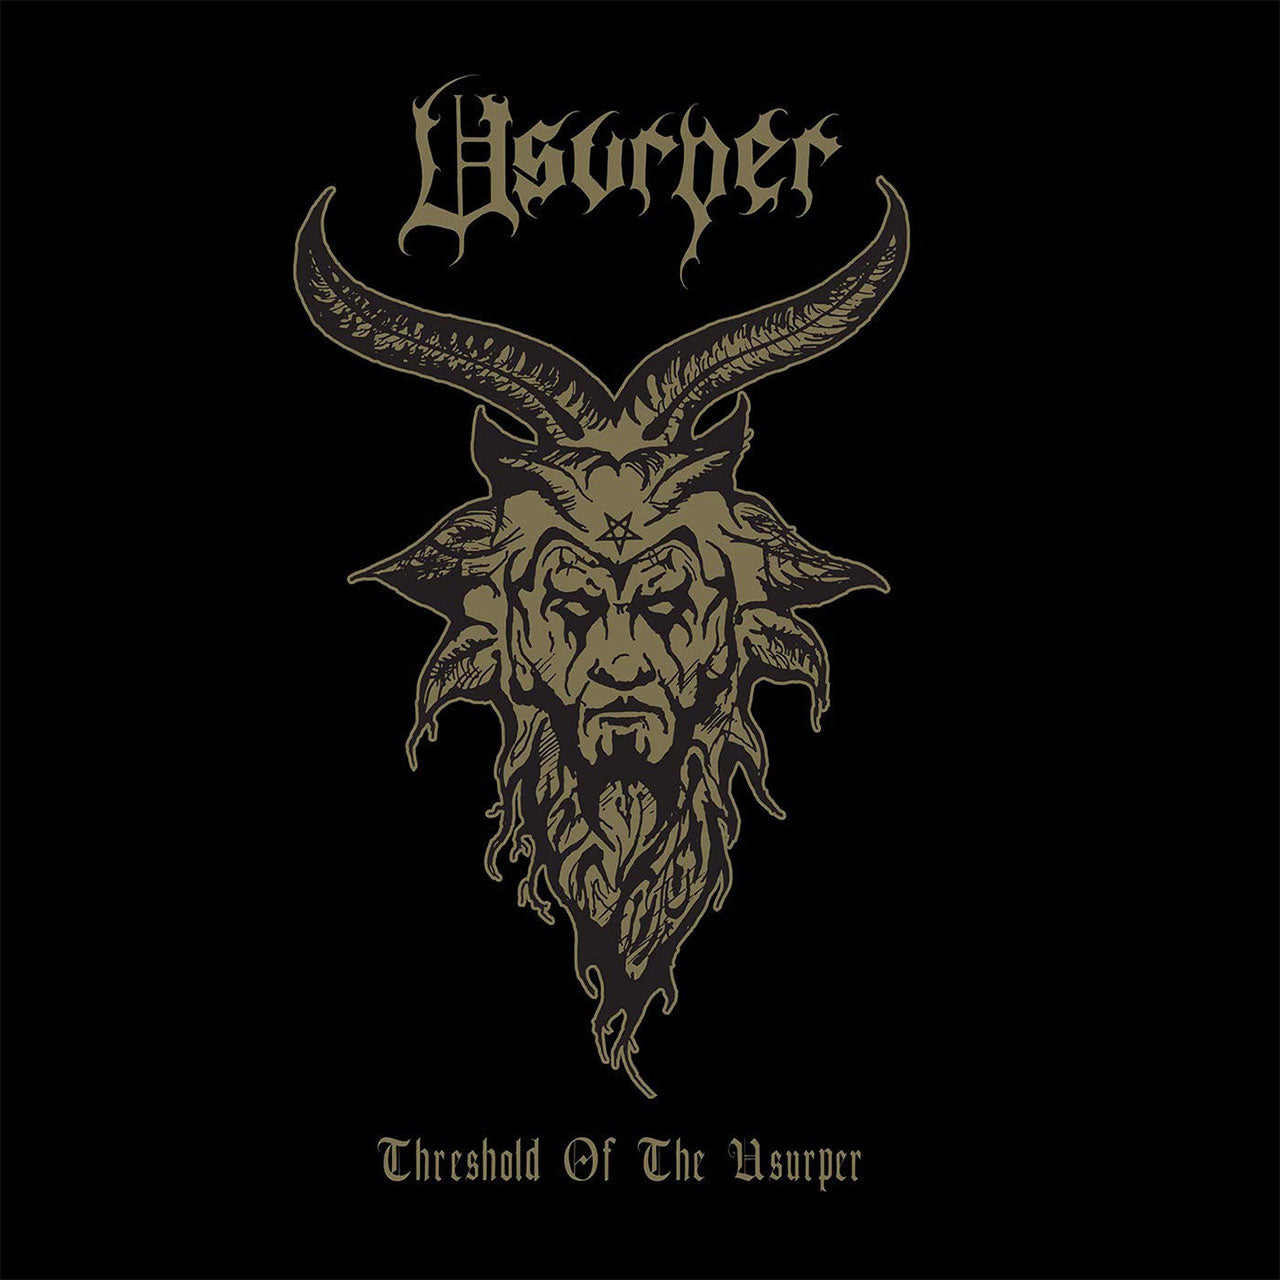 Usurper - Threshold of the Usurper (2019 Reissue) (Digipak CD)